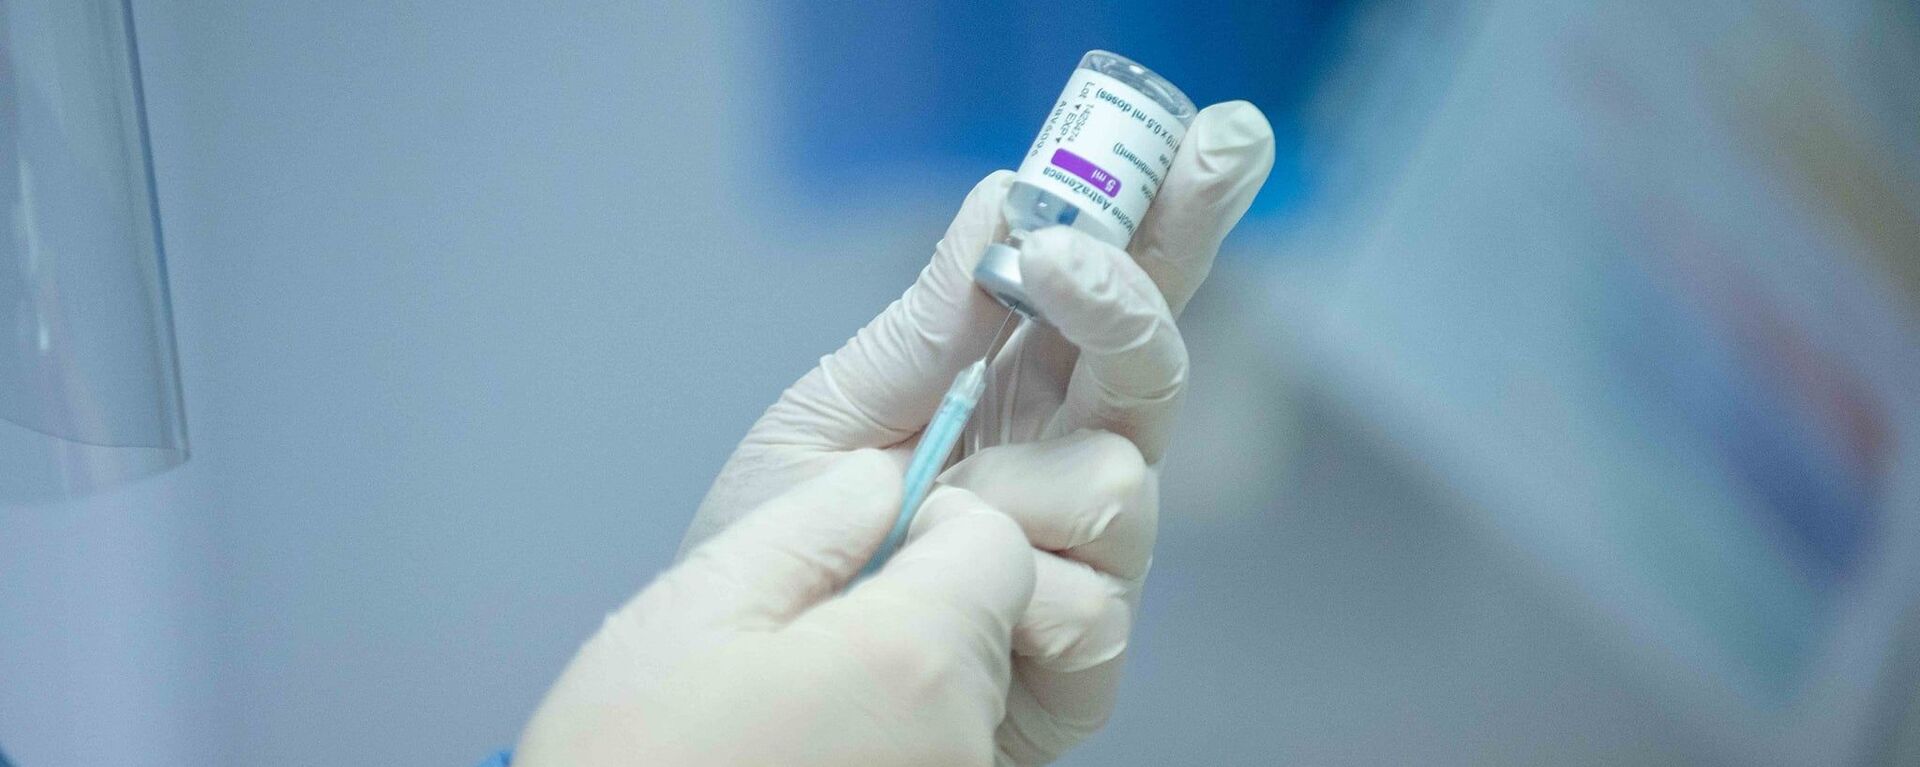 В Молдове стартовала вакцинация врачей от коронавируса - Sputnik Moldova, 1920, 05.03.2021